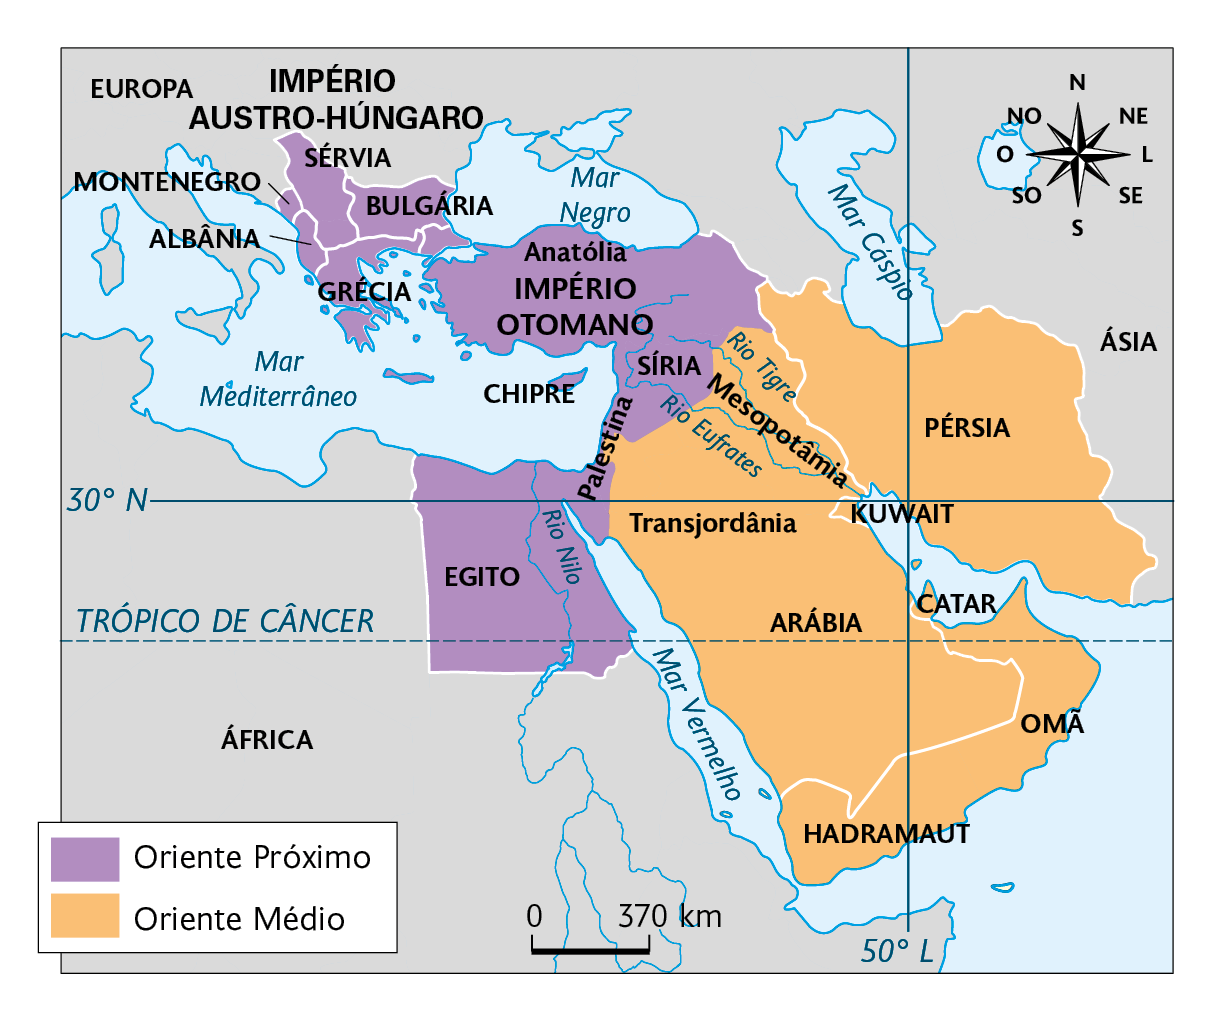 Mapa. O Oriente Próximo e o Oriente Médio – Início do século 20. Oriente Próximo: Albânia, Montenegro, Sérvia, Bulgária, Império Otomano, Anatólia, Síria, Palestina, Egito e Chipre. Oriente Médio: Pérsia, Mesopotâmia, Transjordânia, Kuwait, Arábia, Catar, Omã, Hadramaut. No canto superior direito, a rosa dos ventos. Na parte inferior, a escala: 370 quilômetros por centímetro.